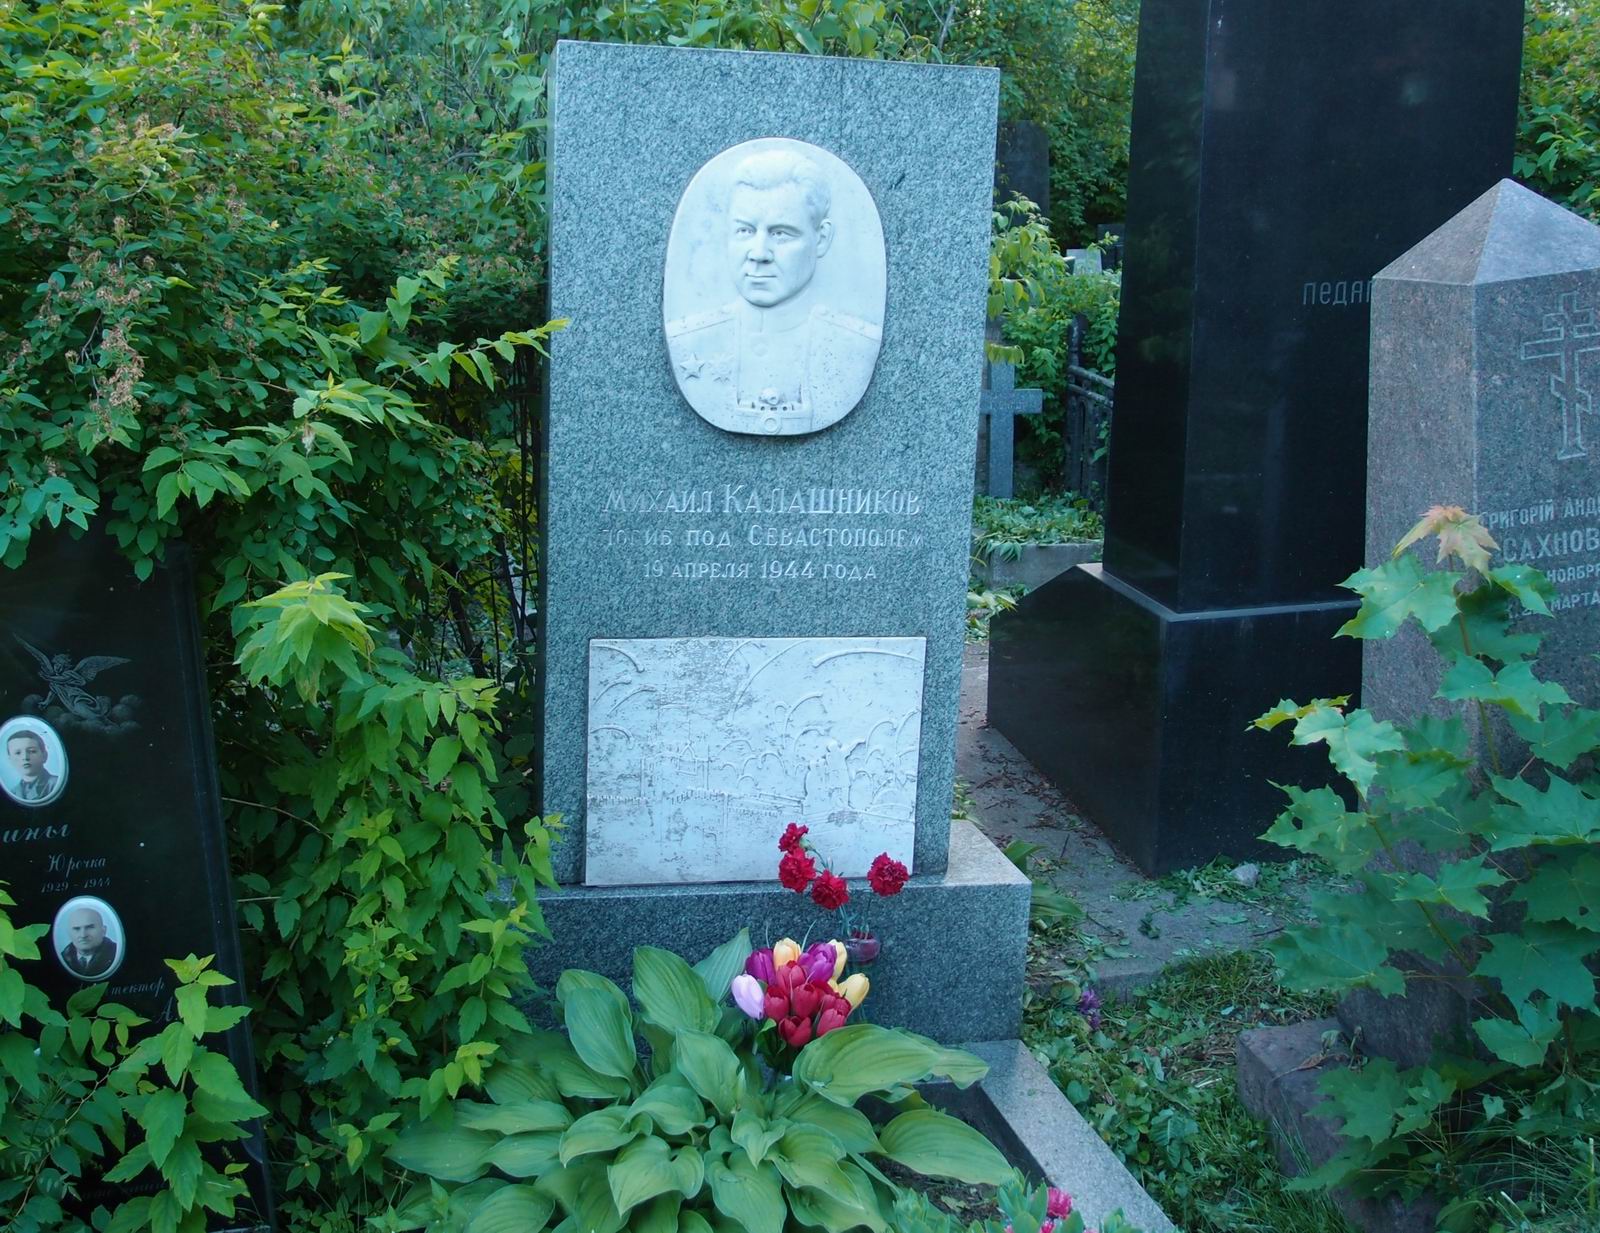 Памятник на могиле Калашникова М.М. (1906-1944), на Новодевичьем кладбище (3-5-4). Нажмите левую кнопку мыши чтобы увидеть фрагмент памятника.